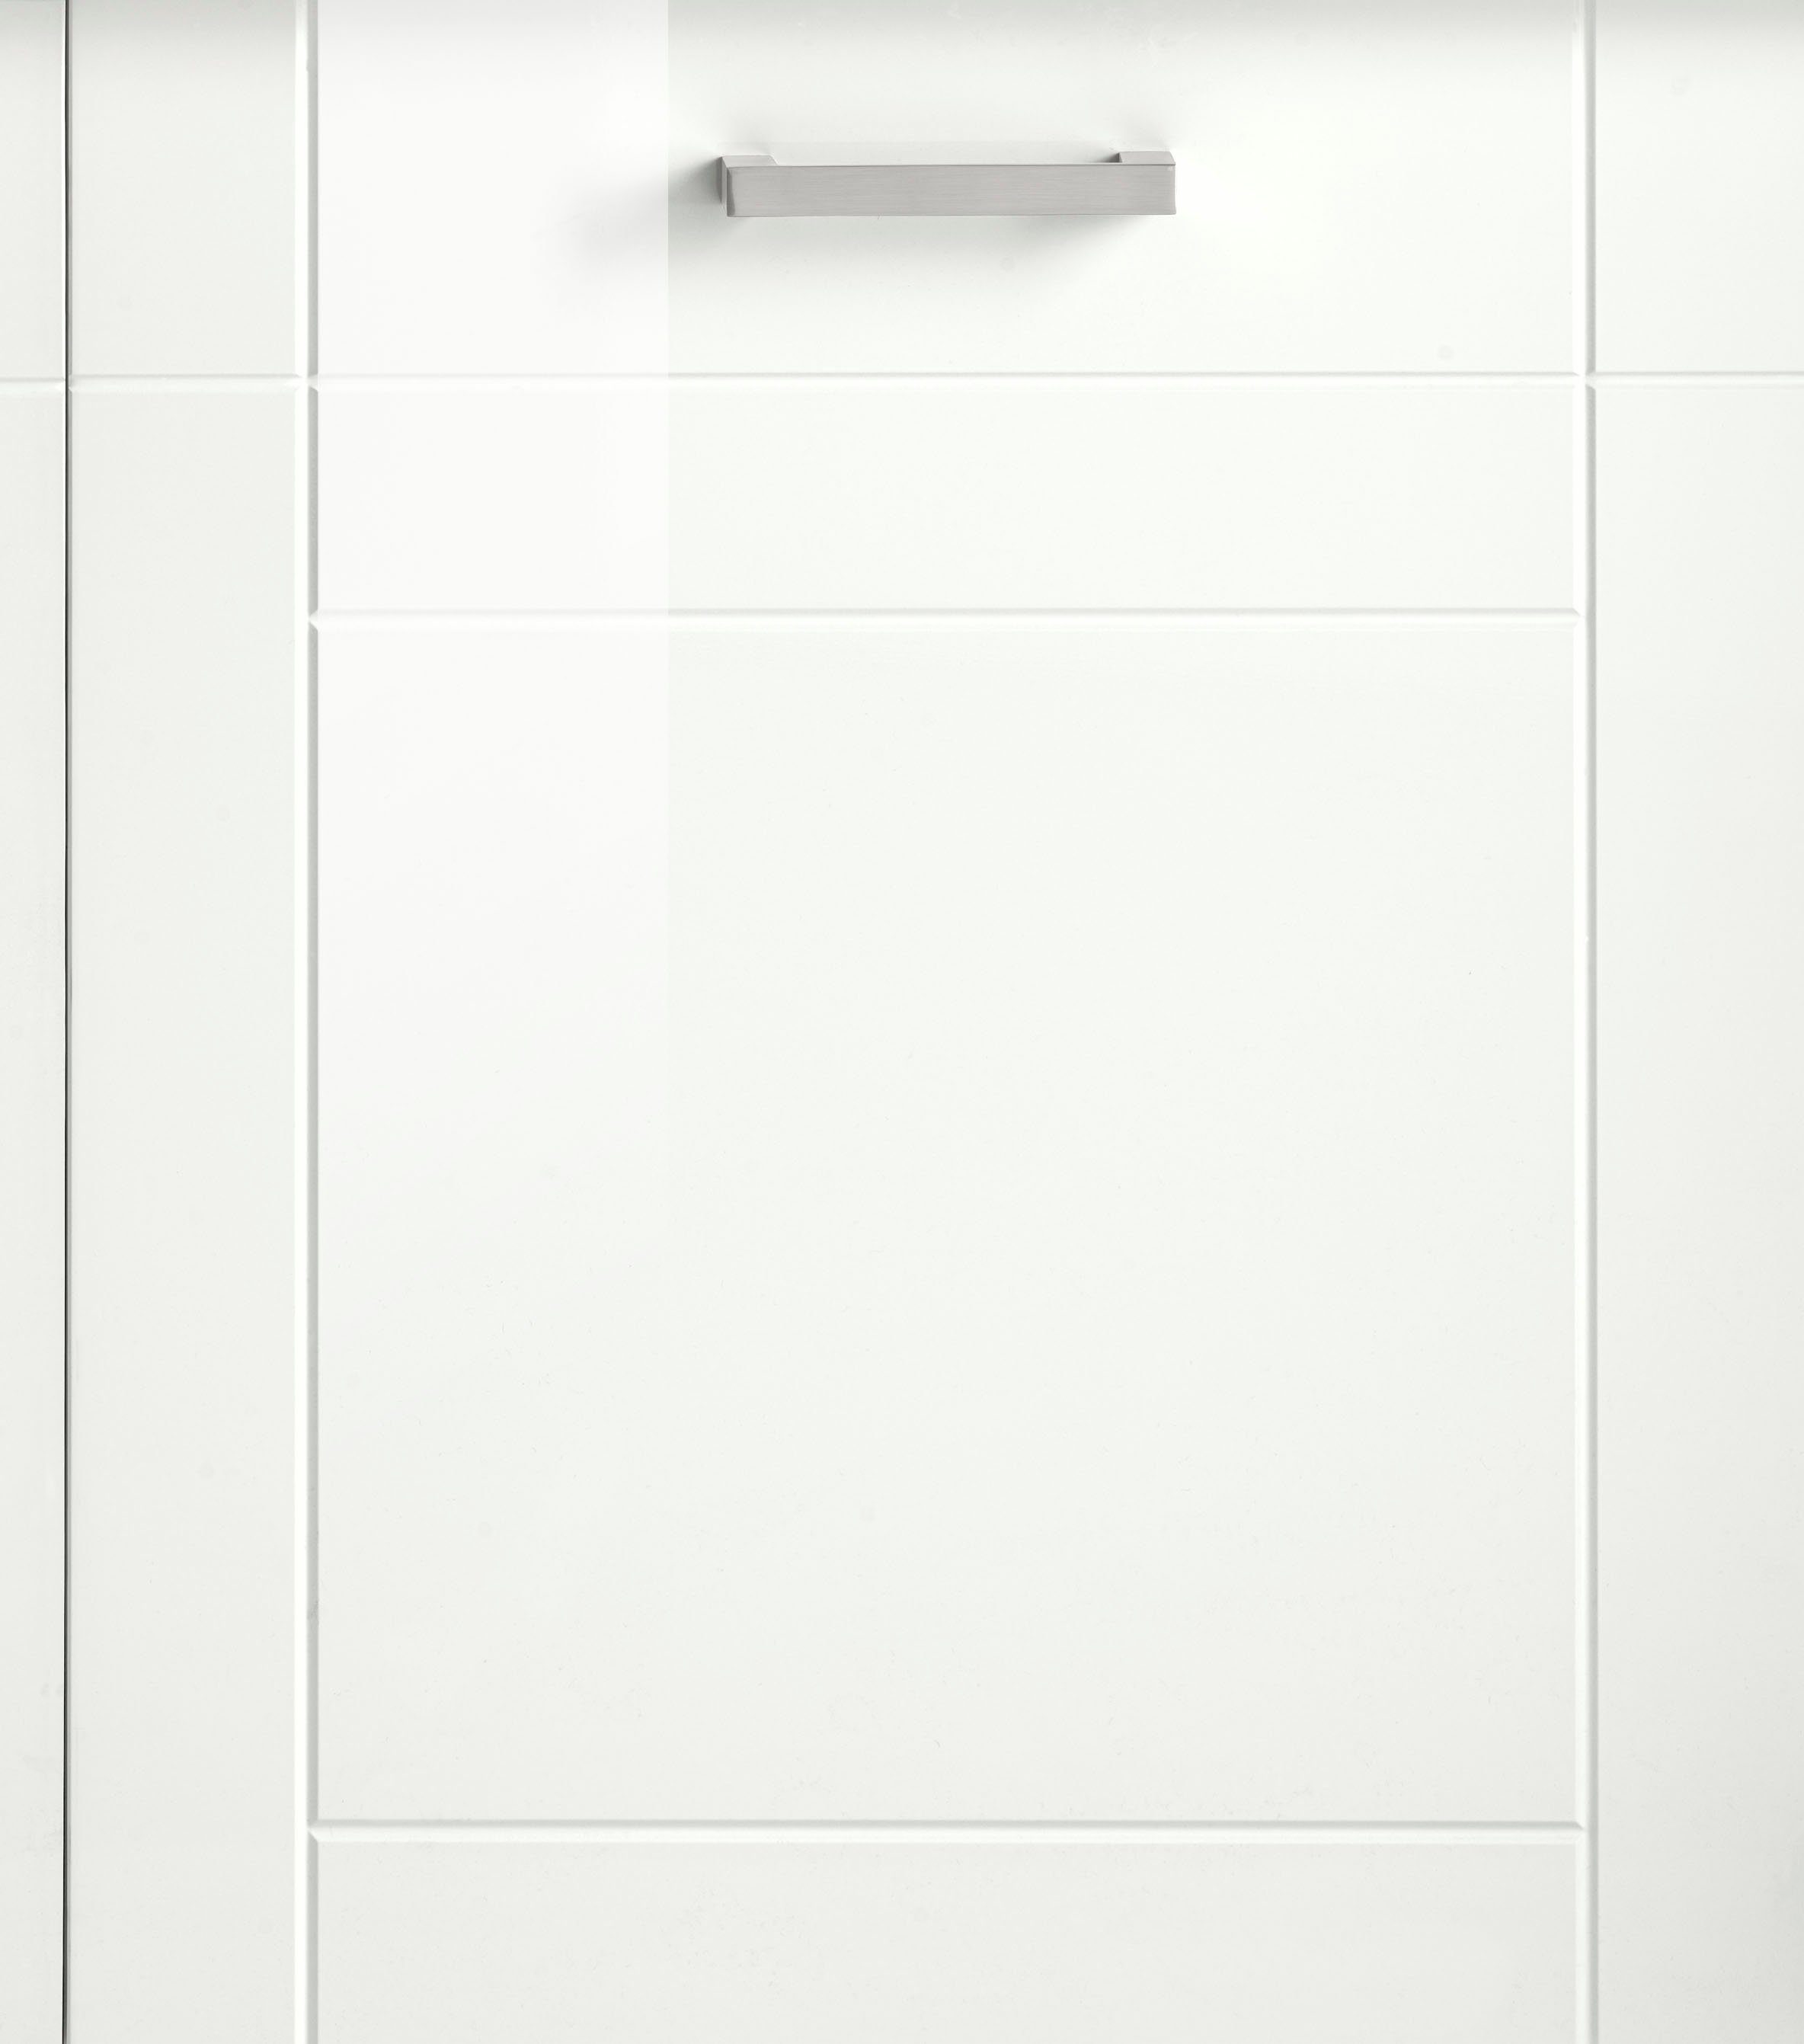 HELD MÖBEL Spülenschrank Tinnum 120 cm breit, Einbauspüle inklusive weiß Metallgriffe, MDF-Fronten, weiß 